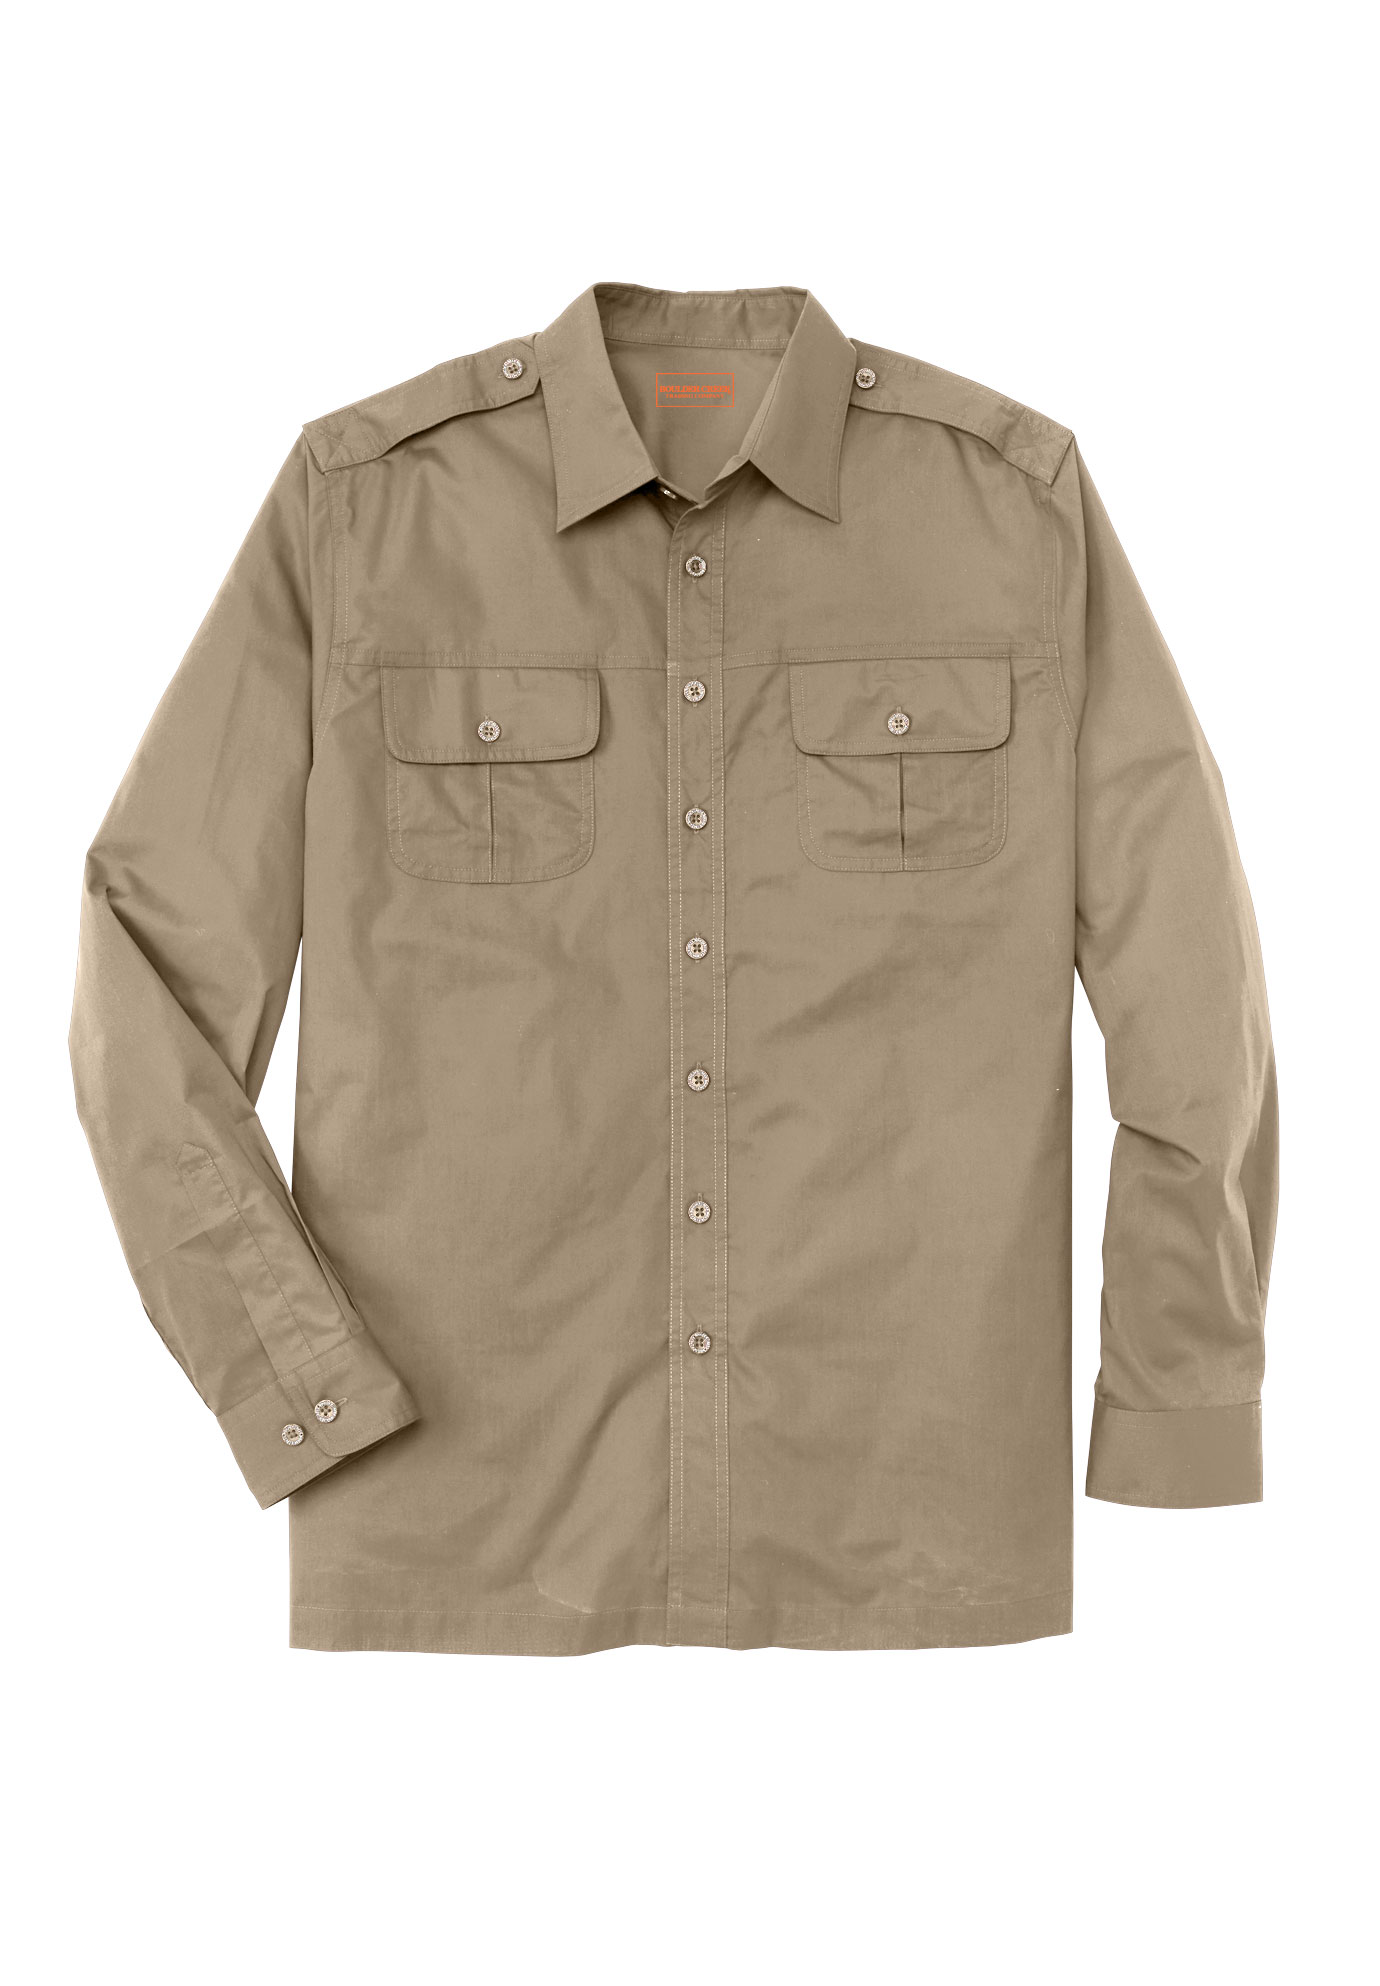 Boulder Creek by Kingsize Mens Big & Tall Short Sleeve Pilot Shirt 